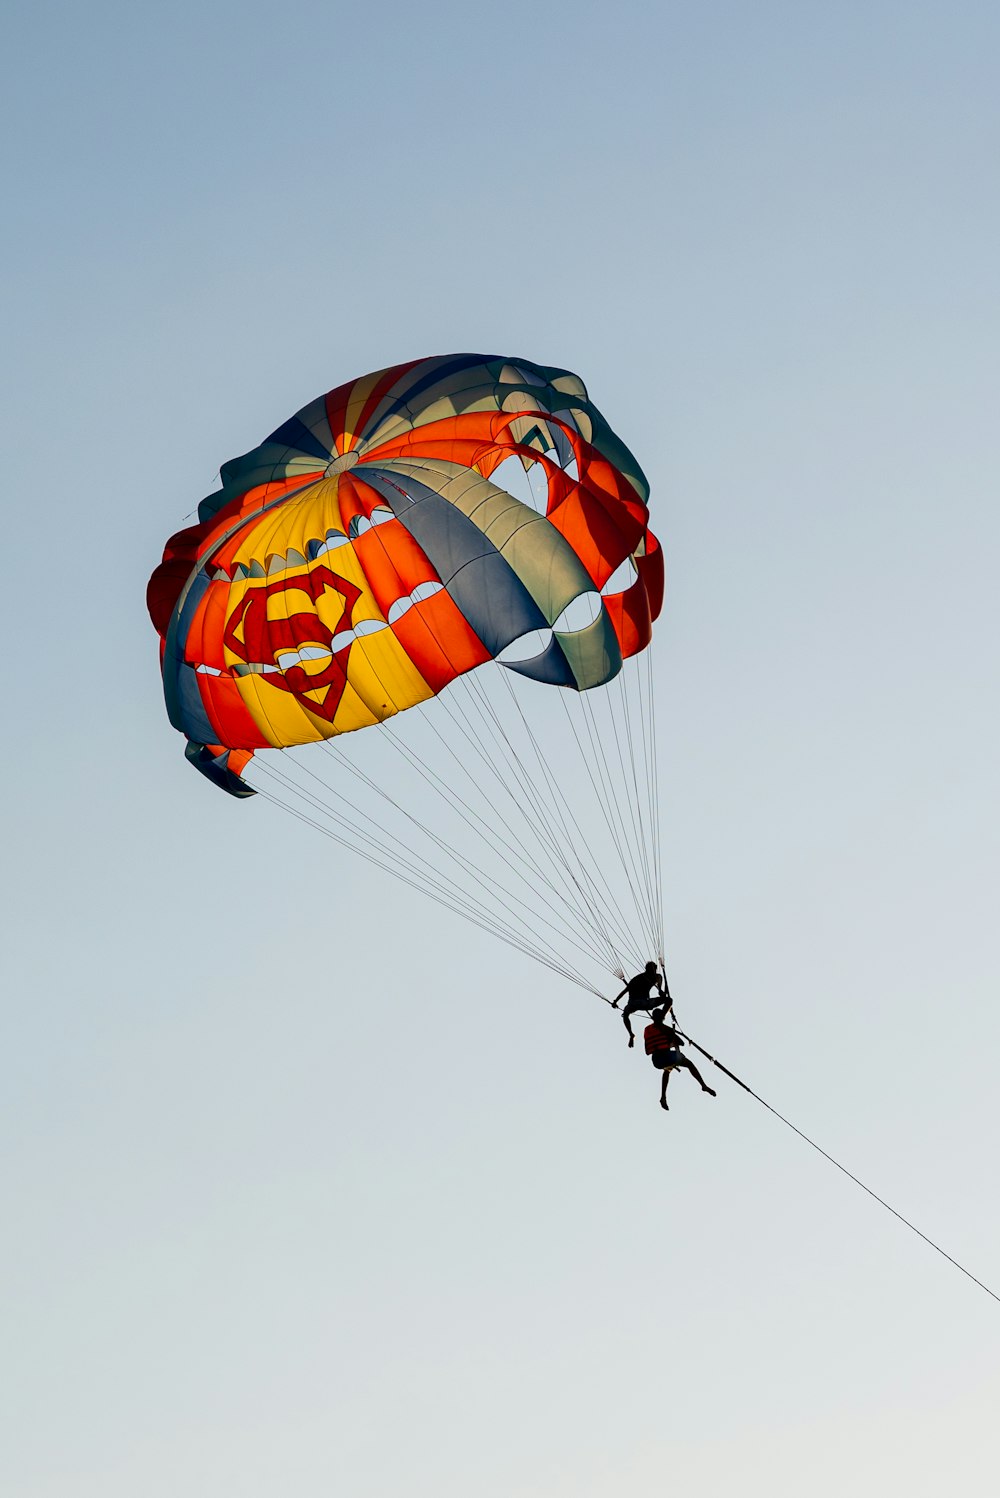 Eine Person ist Parasailing am Himmel mit einem Fallschirm